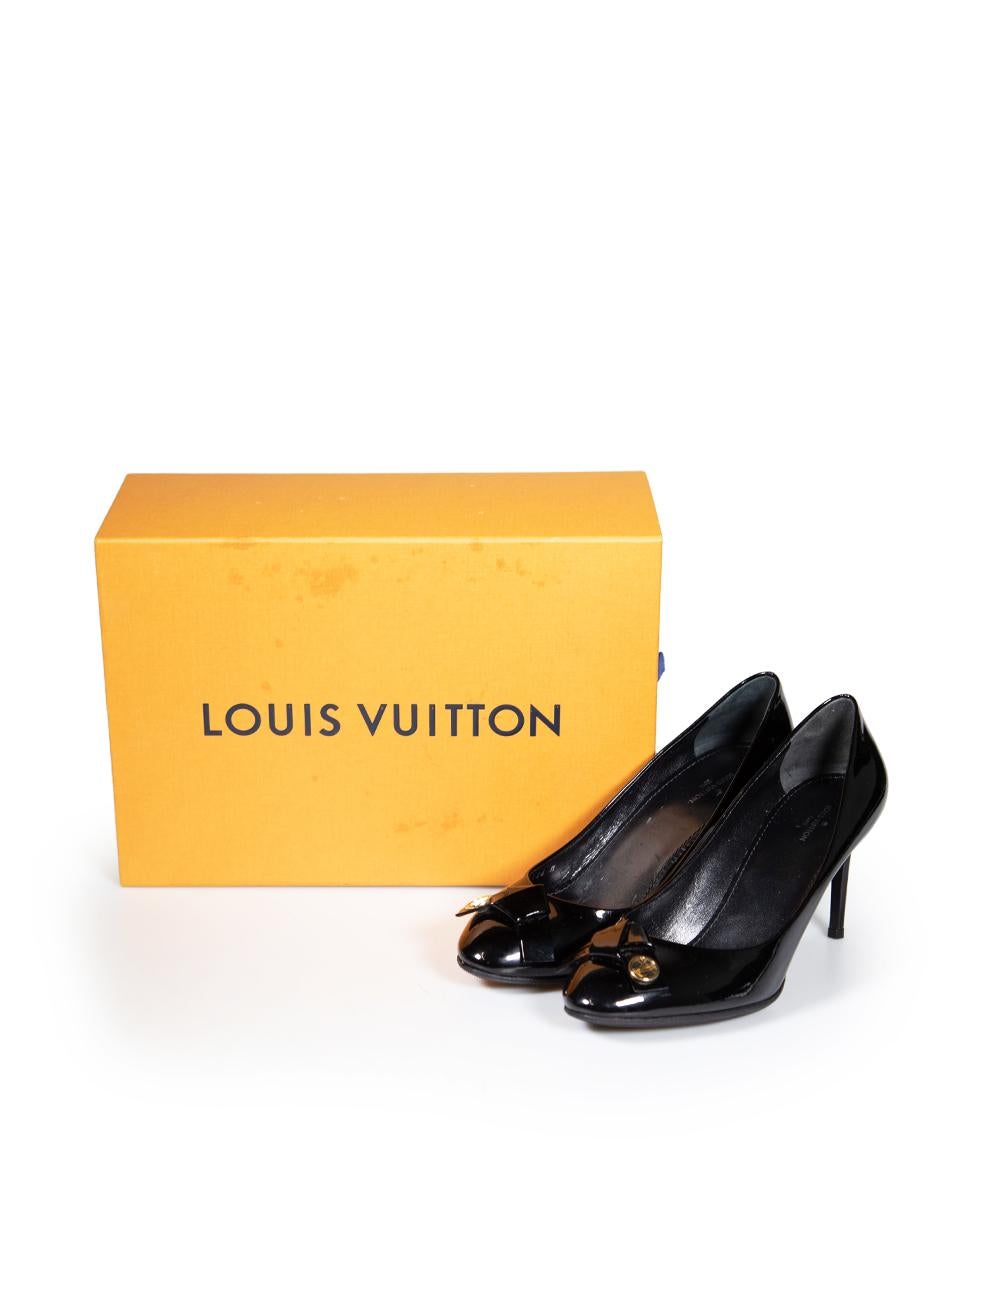 Louis Vuitton Black Patent Leather Fiancee Pumps Size IT 38 2